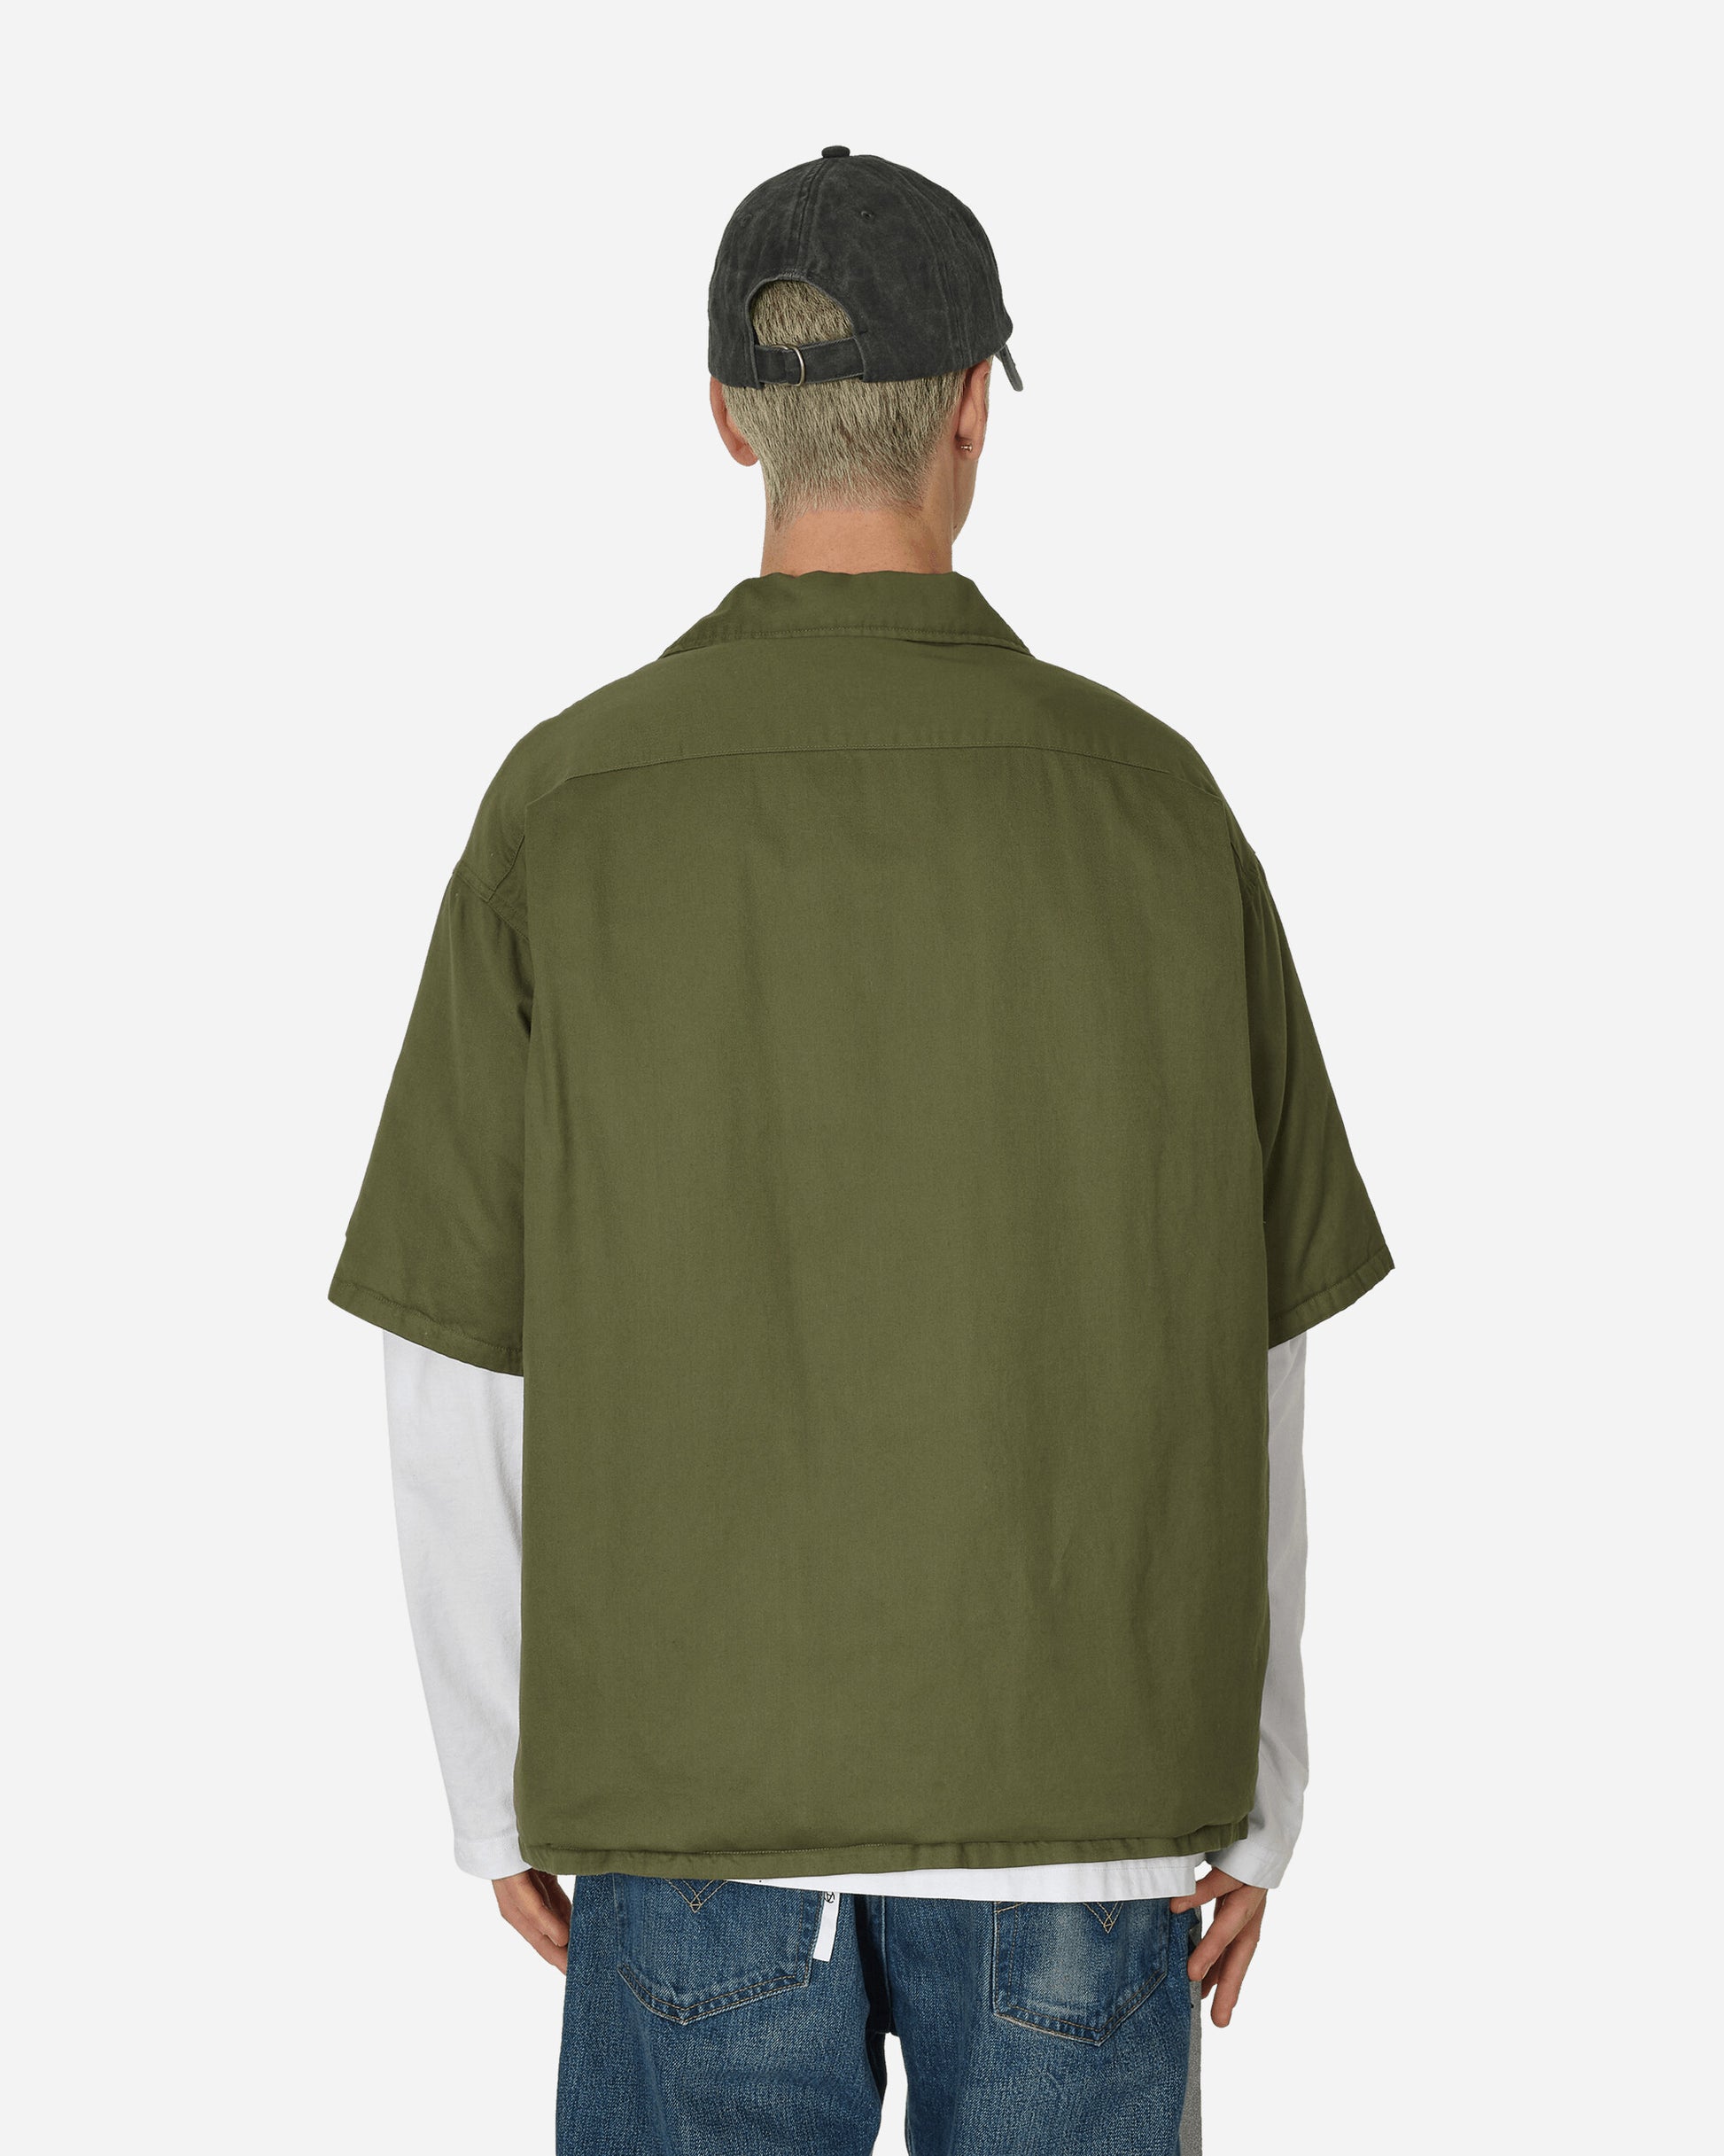 visvim Cornet Down Shirt S/S Olive Shirts Shortsleeve Shirt 124105011025 001